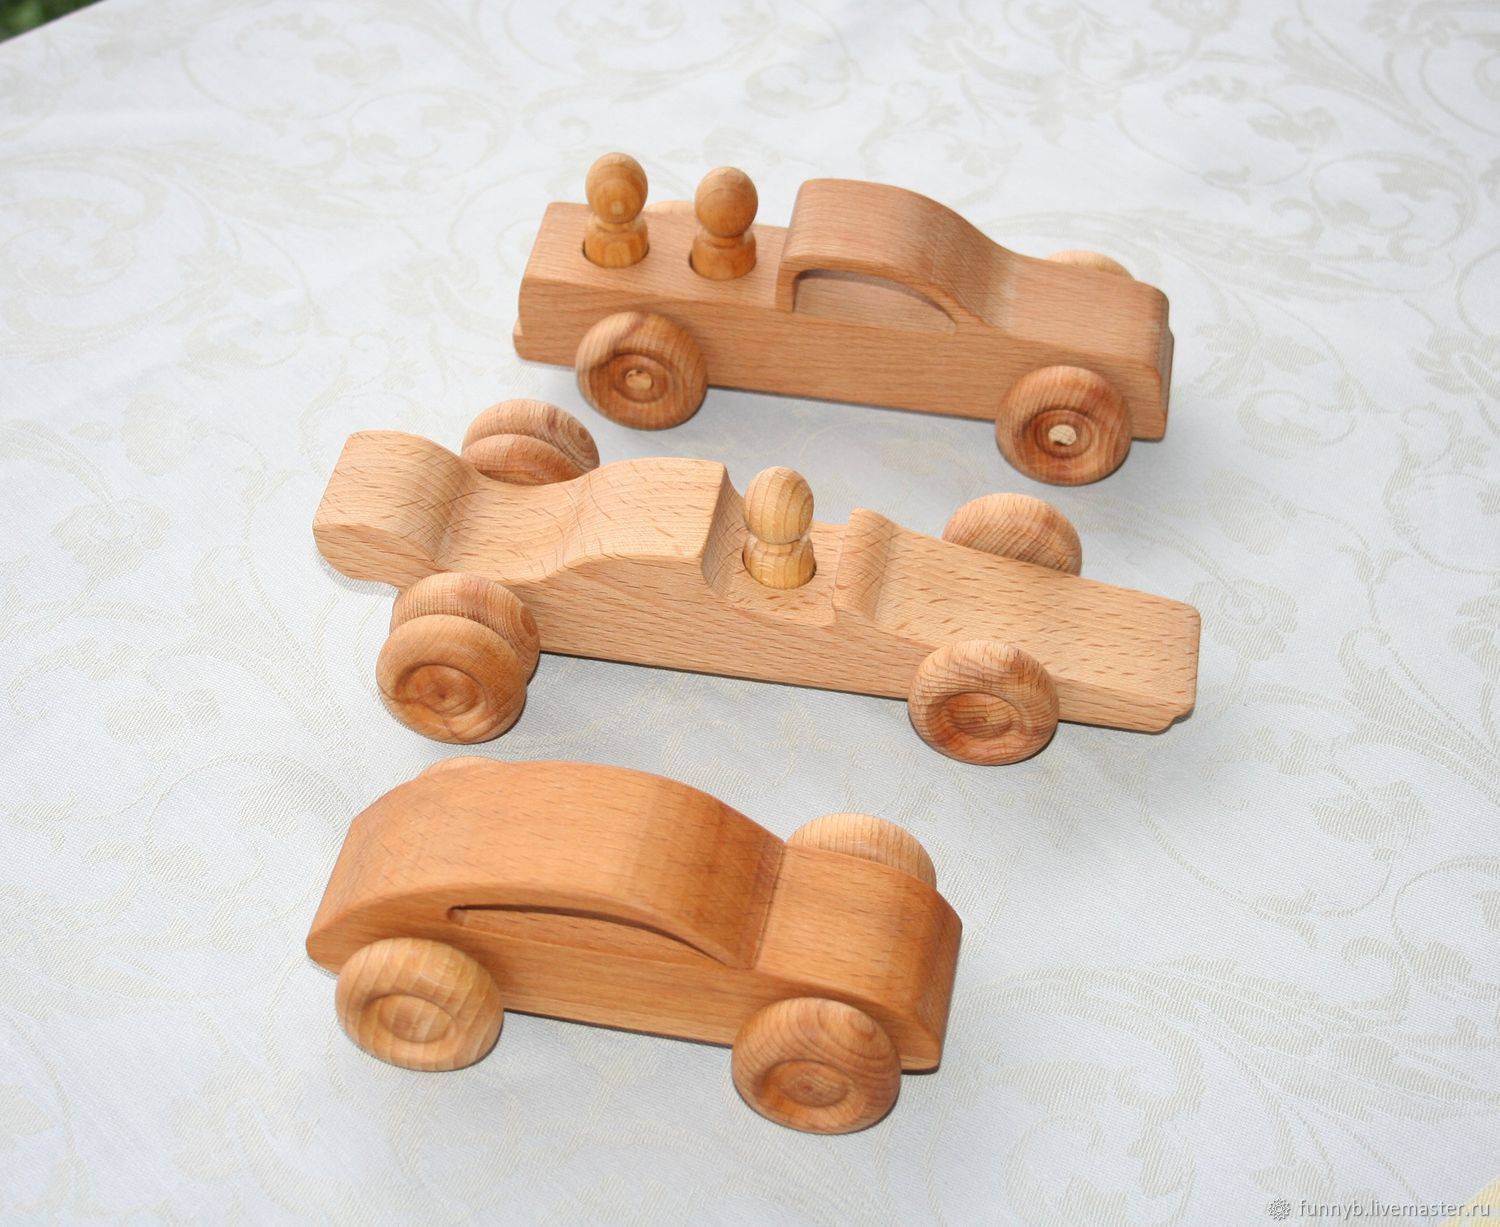 Машинки для детской площадки своими руками: фото и идеи строительства из шин и дерева